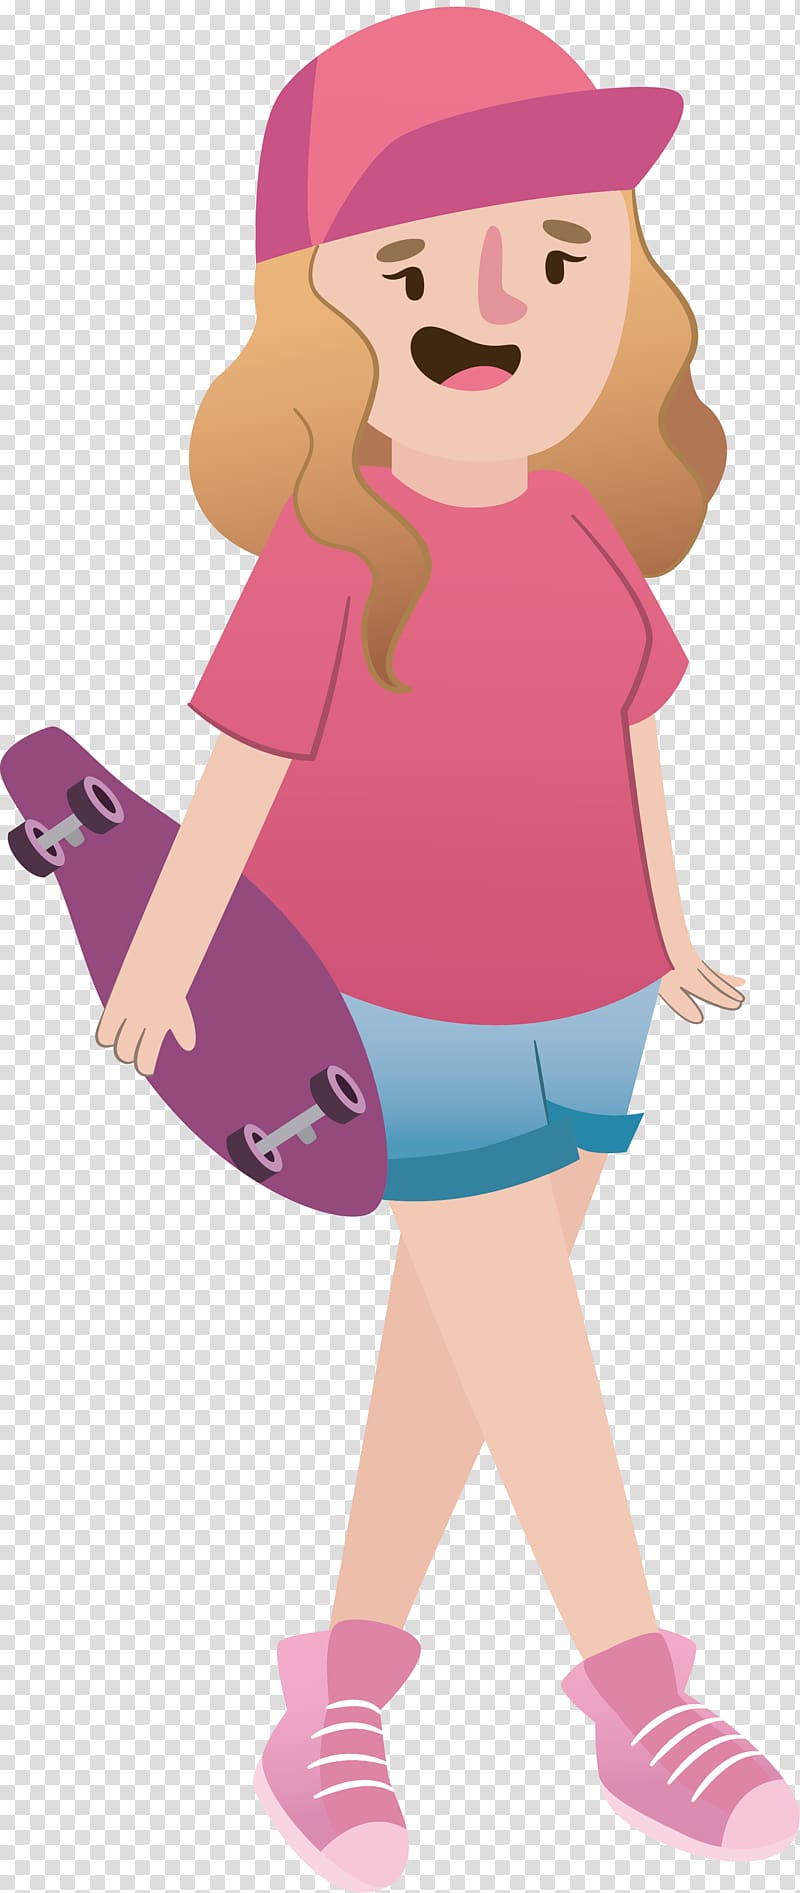 Drawing Illustration, Skateboard girl design transparent background PNG clipart